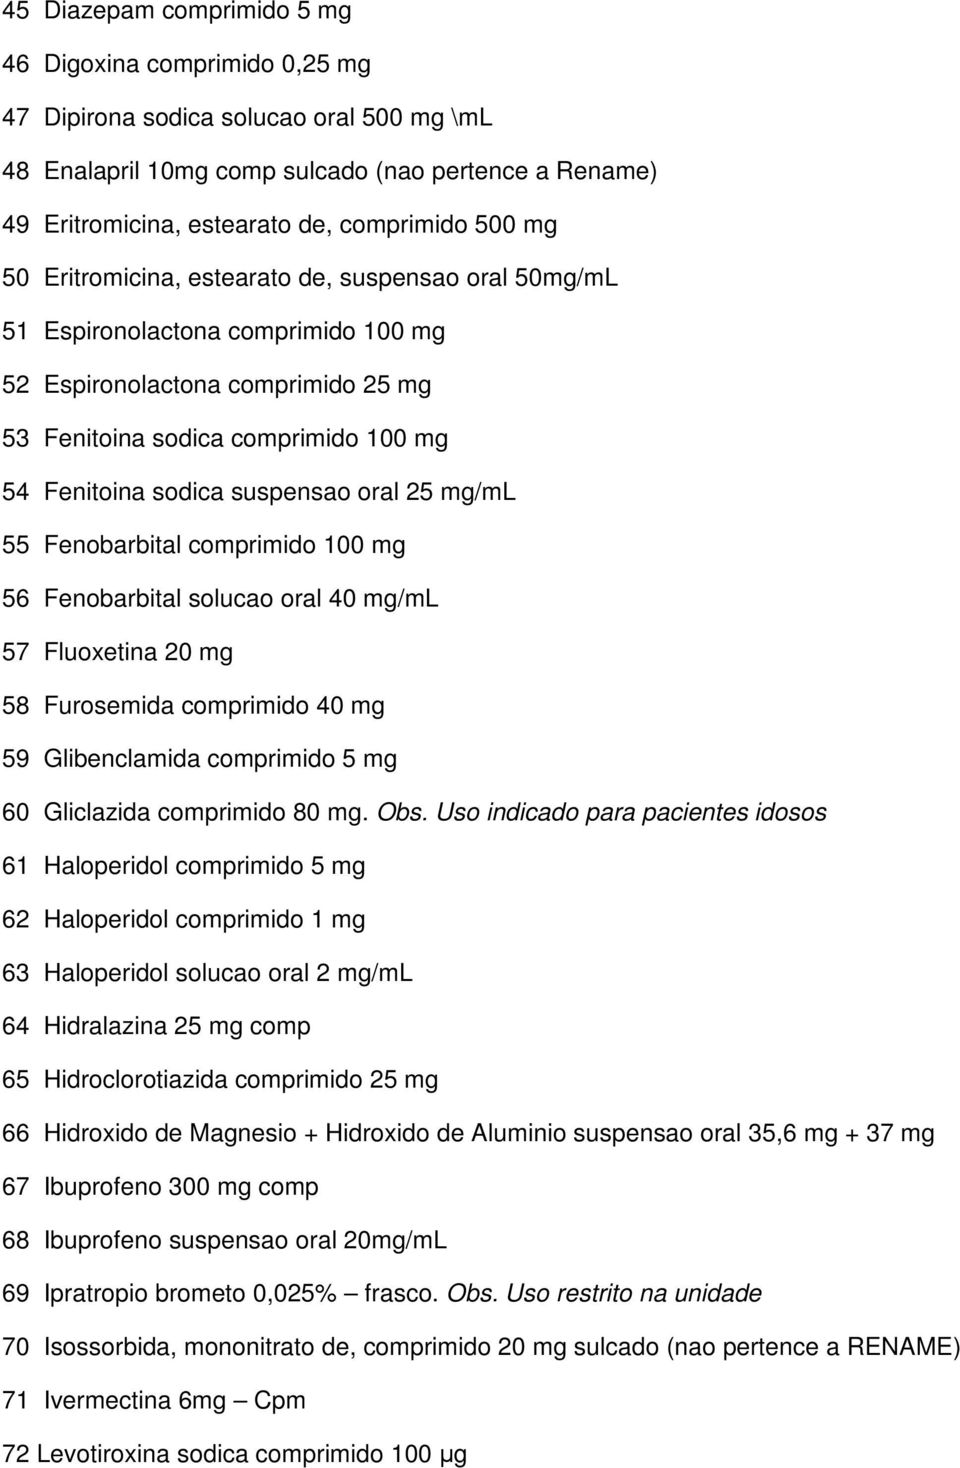 suspensao oral 25 mg/ml 55 Fenobarbital comprimido 100 mg 56 Fenobarbital solucao oral 40 mg/ml 57 Fluoxetina 20 mg 58 Furosemida comprimido 40 mg 59 Glibenclamida comprimido 5 mg 60 Gliclazida